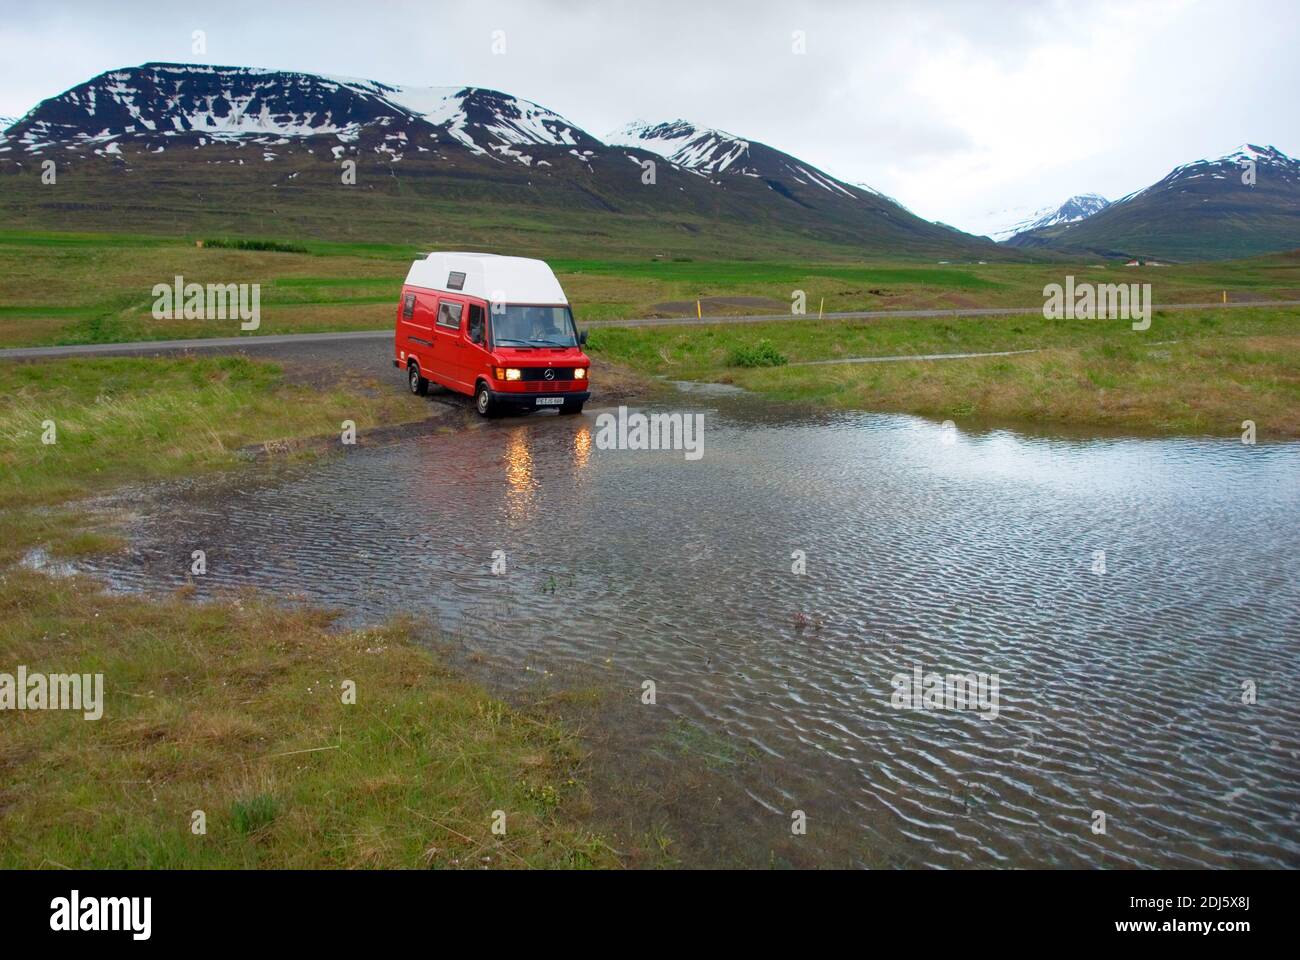 Europa, Island, Iceland, Auto im Wasser bei Skrida, Hochwasser, Flusslauf aendert sich nach Regen, Furt, Wohnmobil Stock Photo